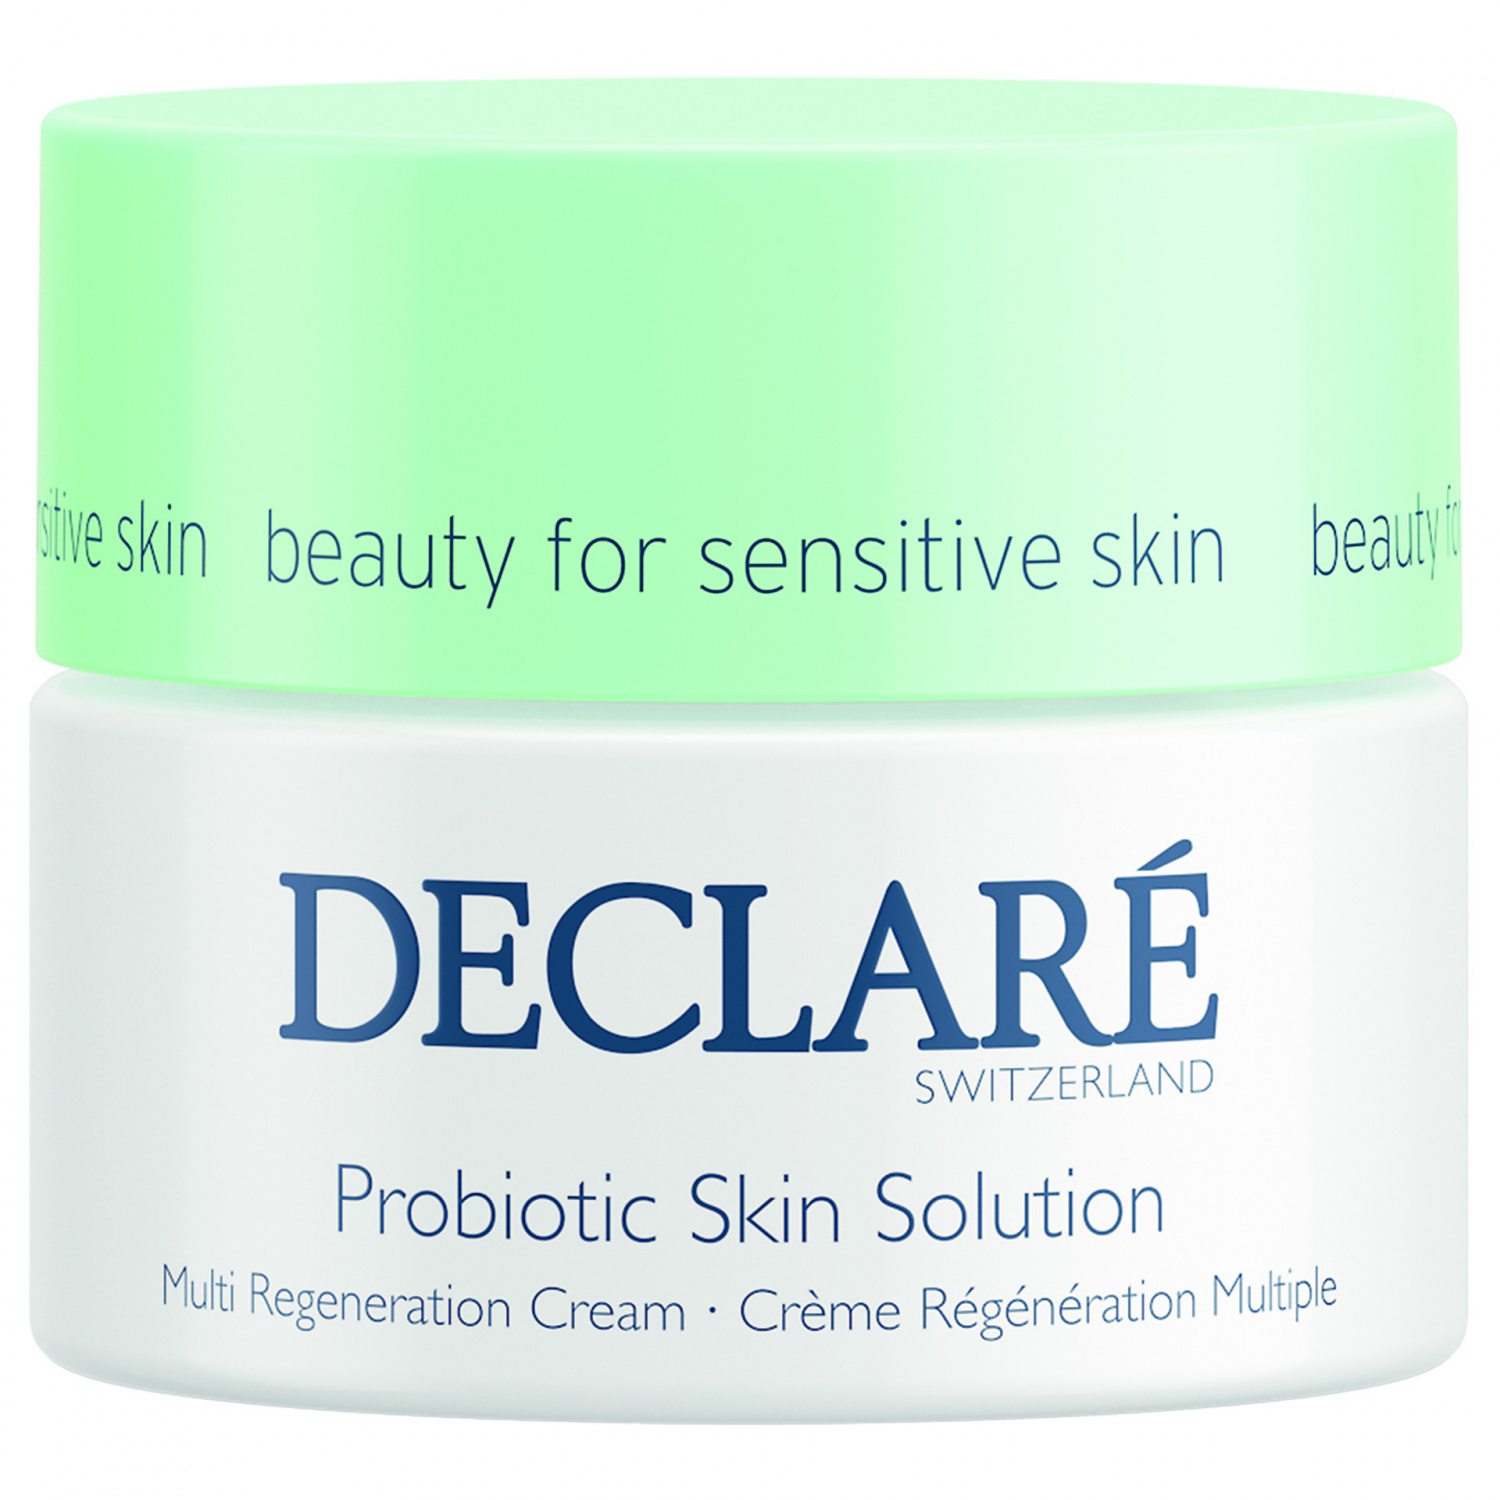 Declare Probiotic Multi Regeneration Cream 50ml - интернет-магазин профессиональной косметики Spadream, изображение 30803